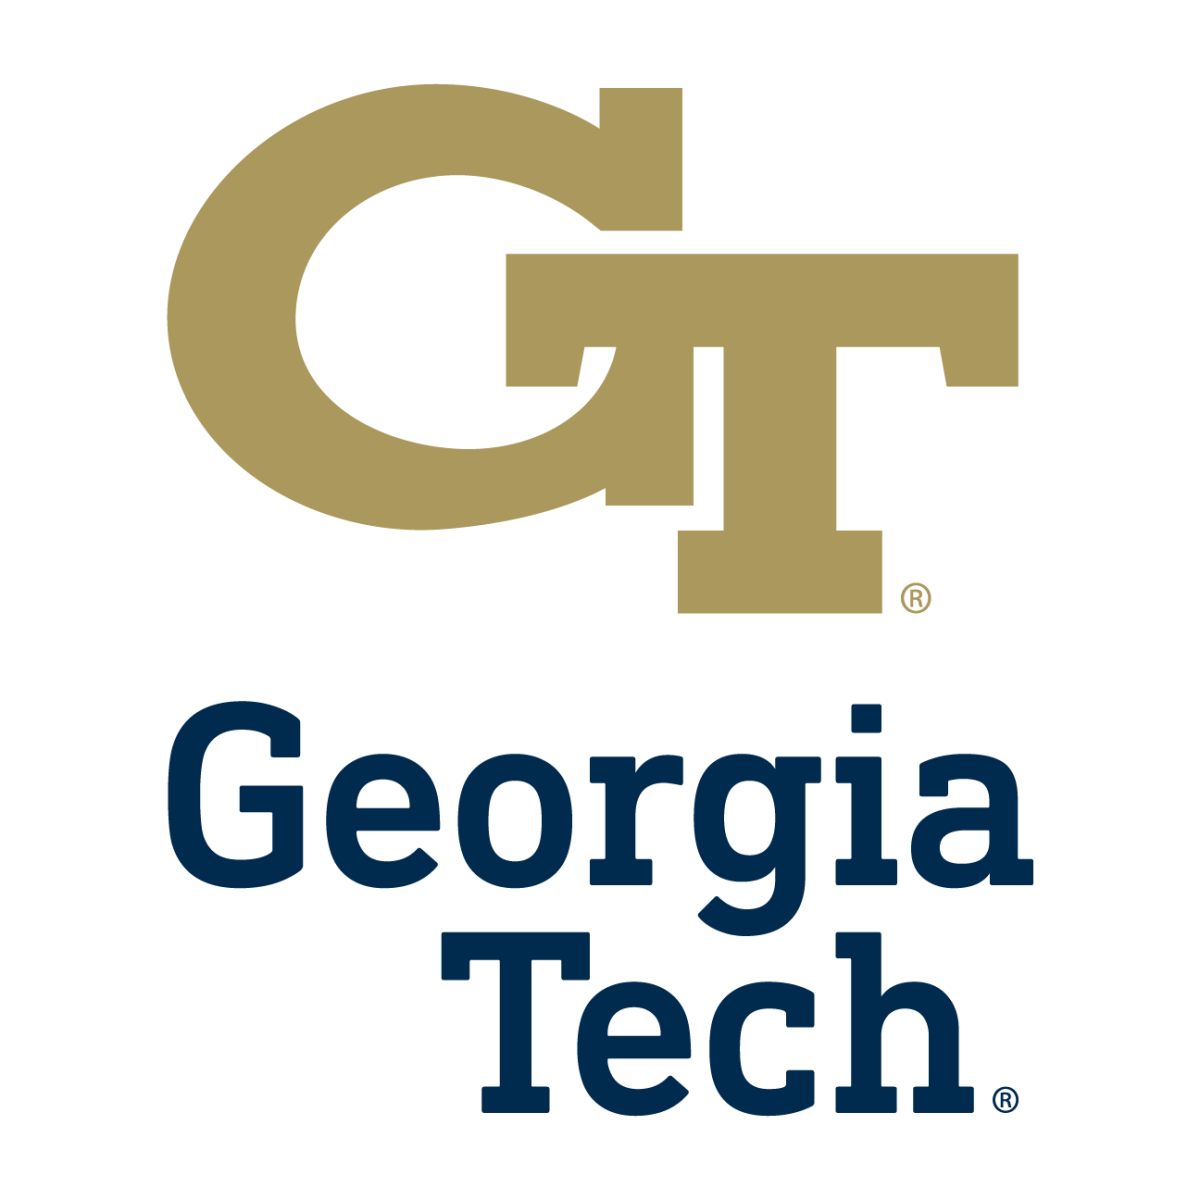 College profile: Georgia Tech